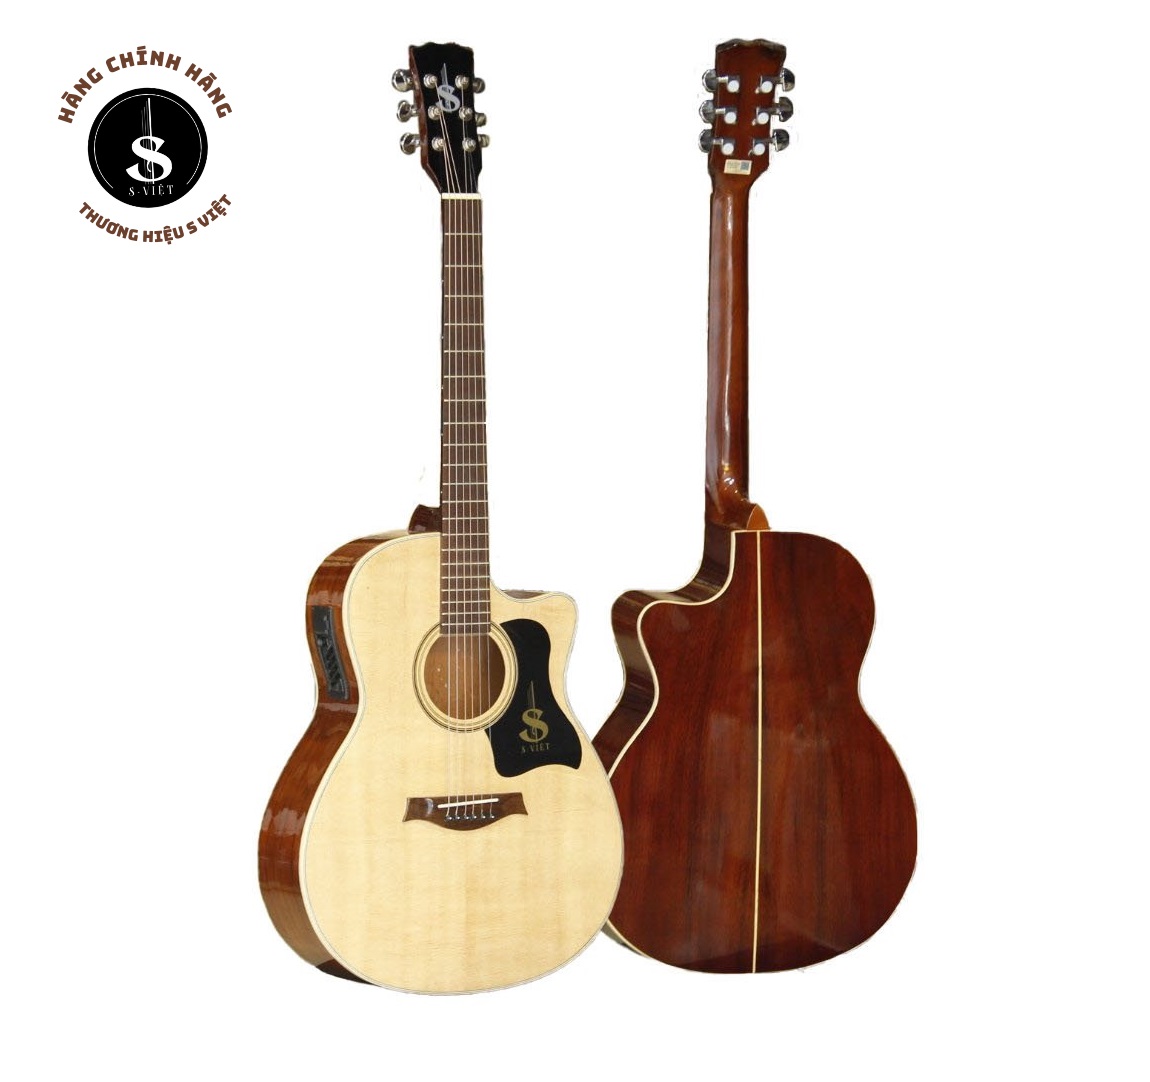 6 mẫu đàn guitar giá rẻ cho người mới tập, đàn guitar acoustic có ty, khóa dây cao cấp, gỗ...